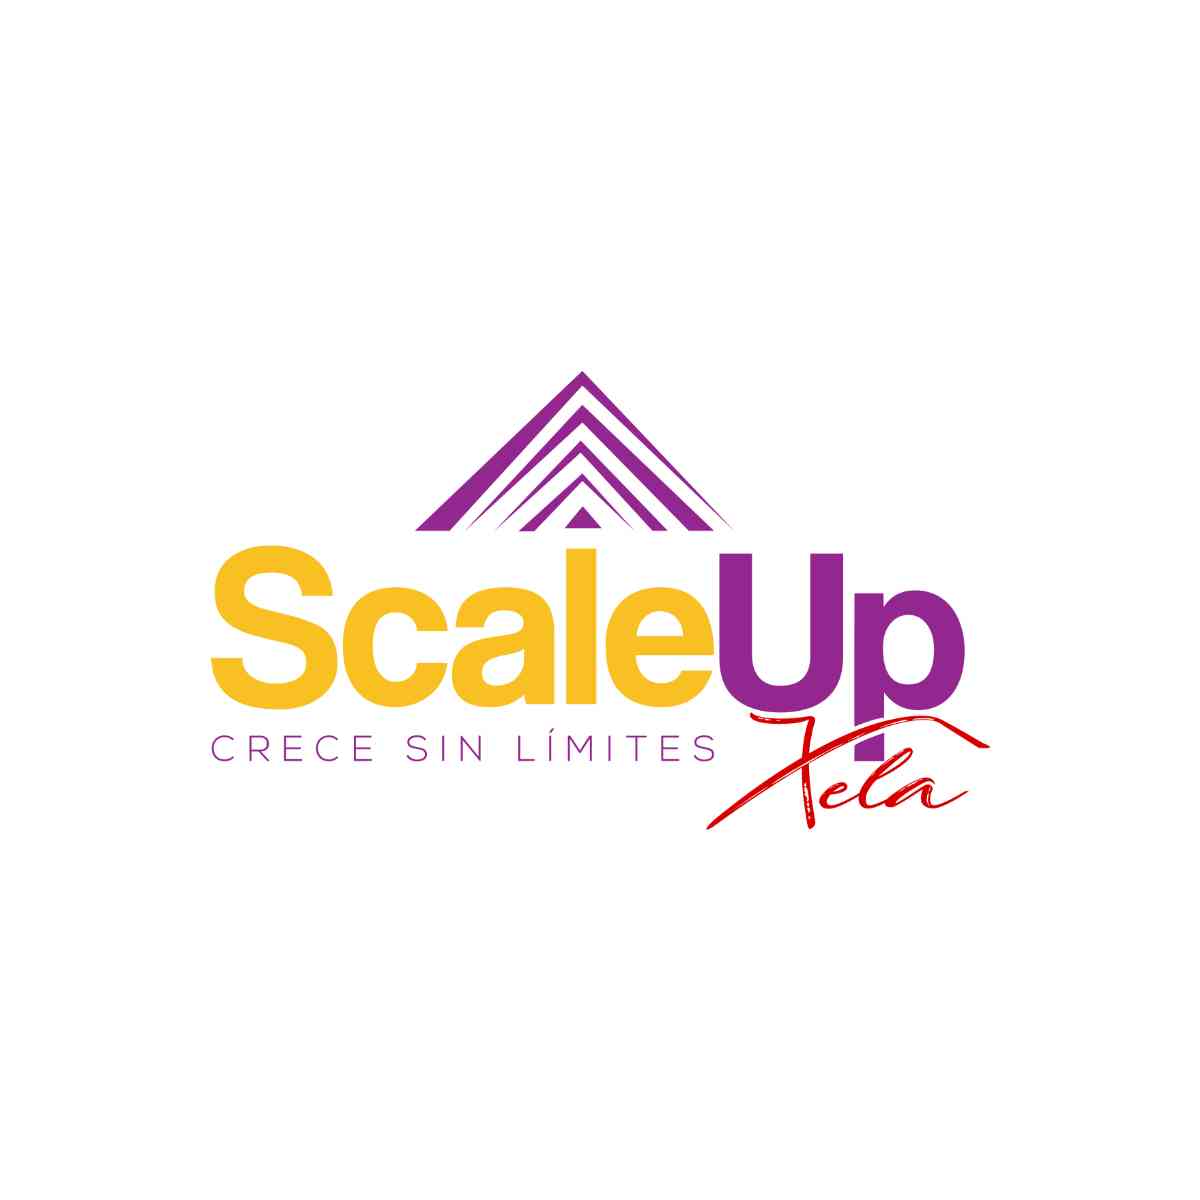 Diseño de logo Scaleup